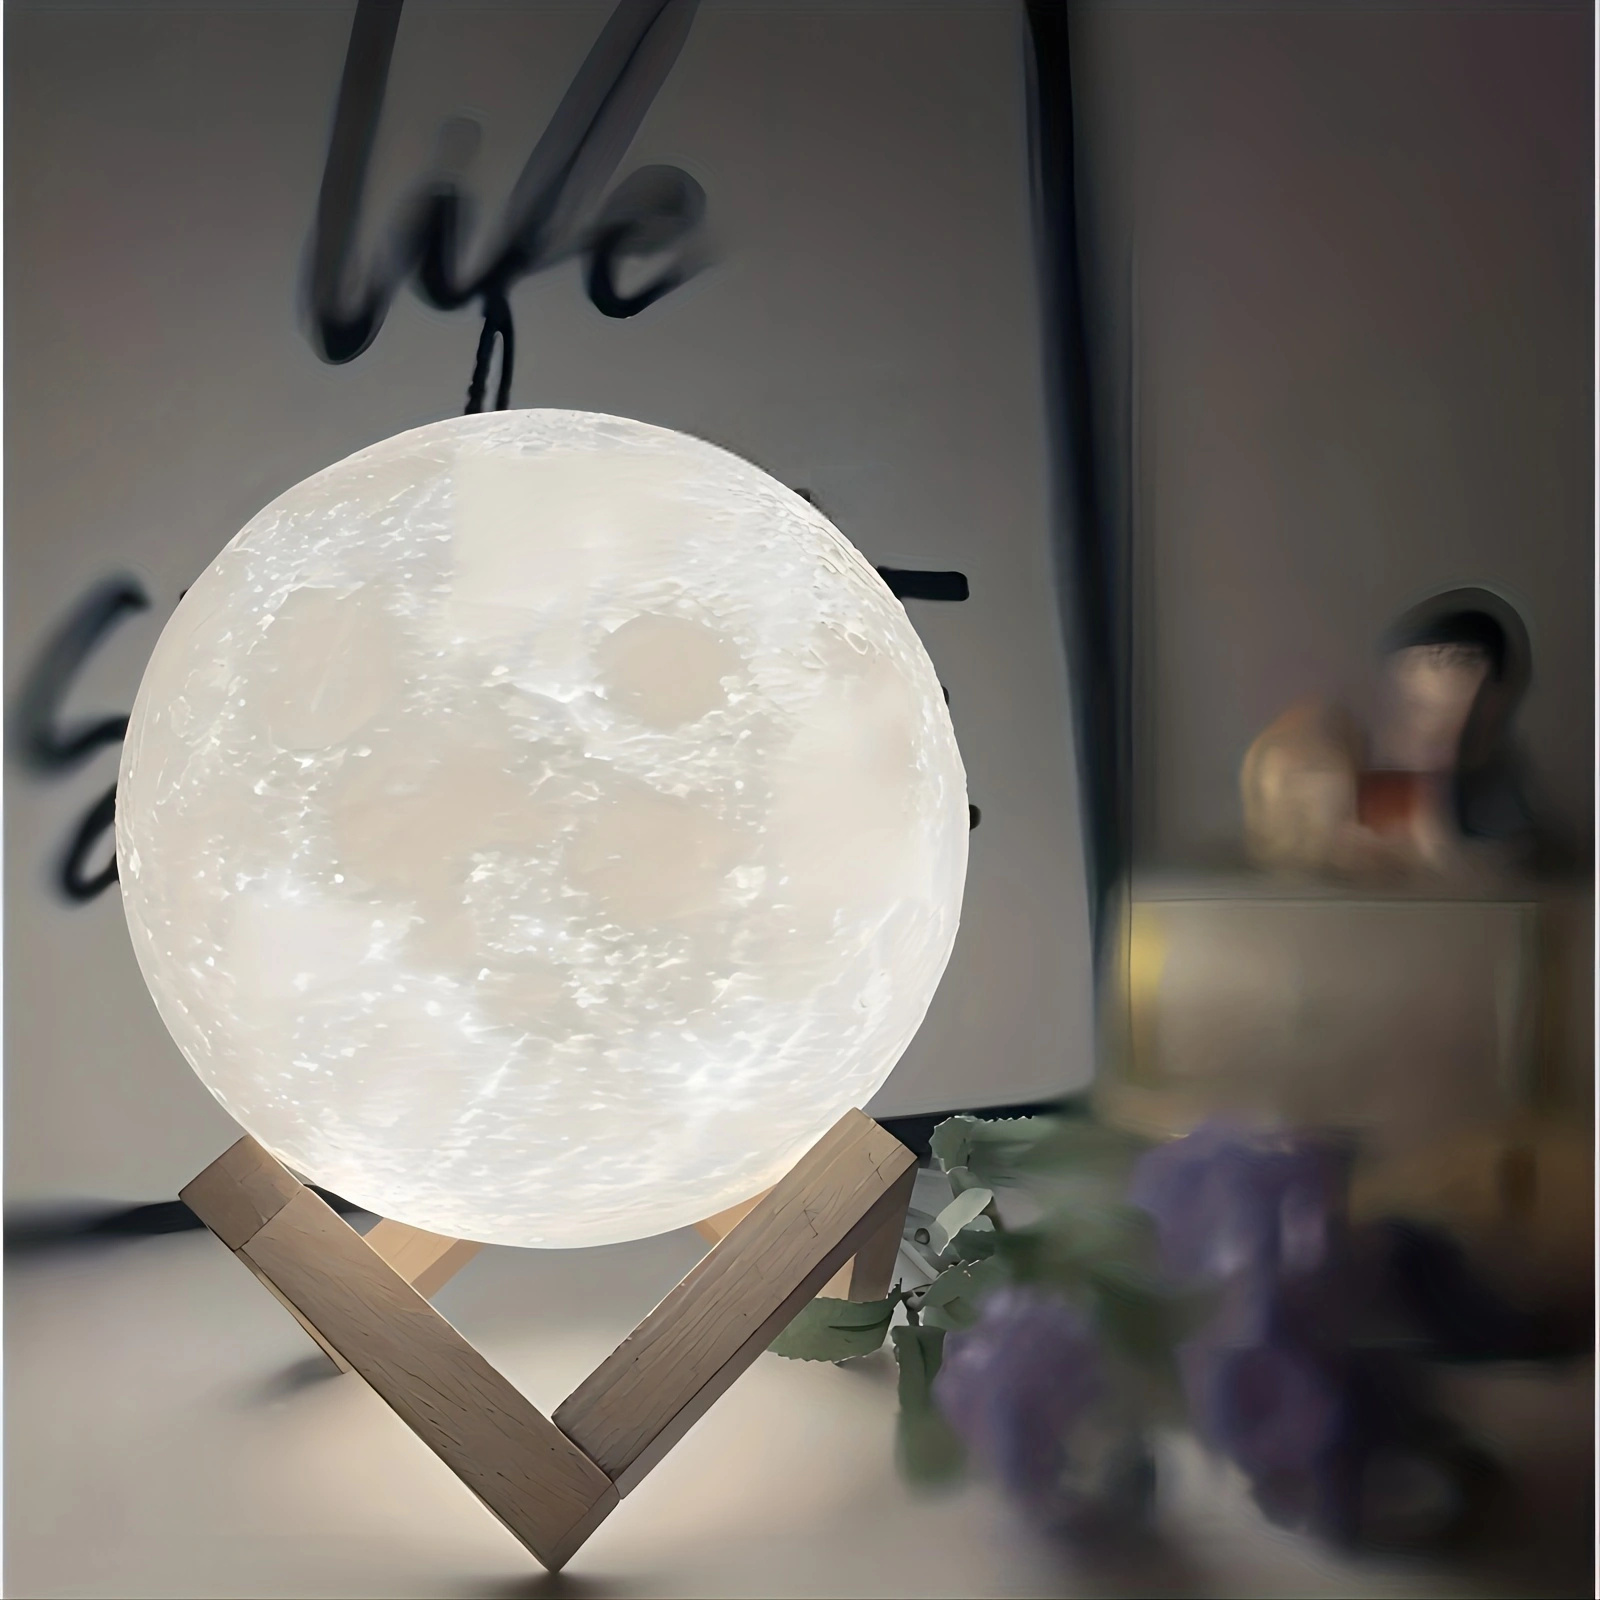 Lampara Luna - La tienda original de lámpara luna